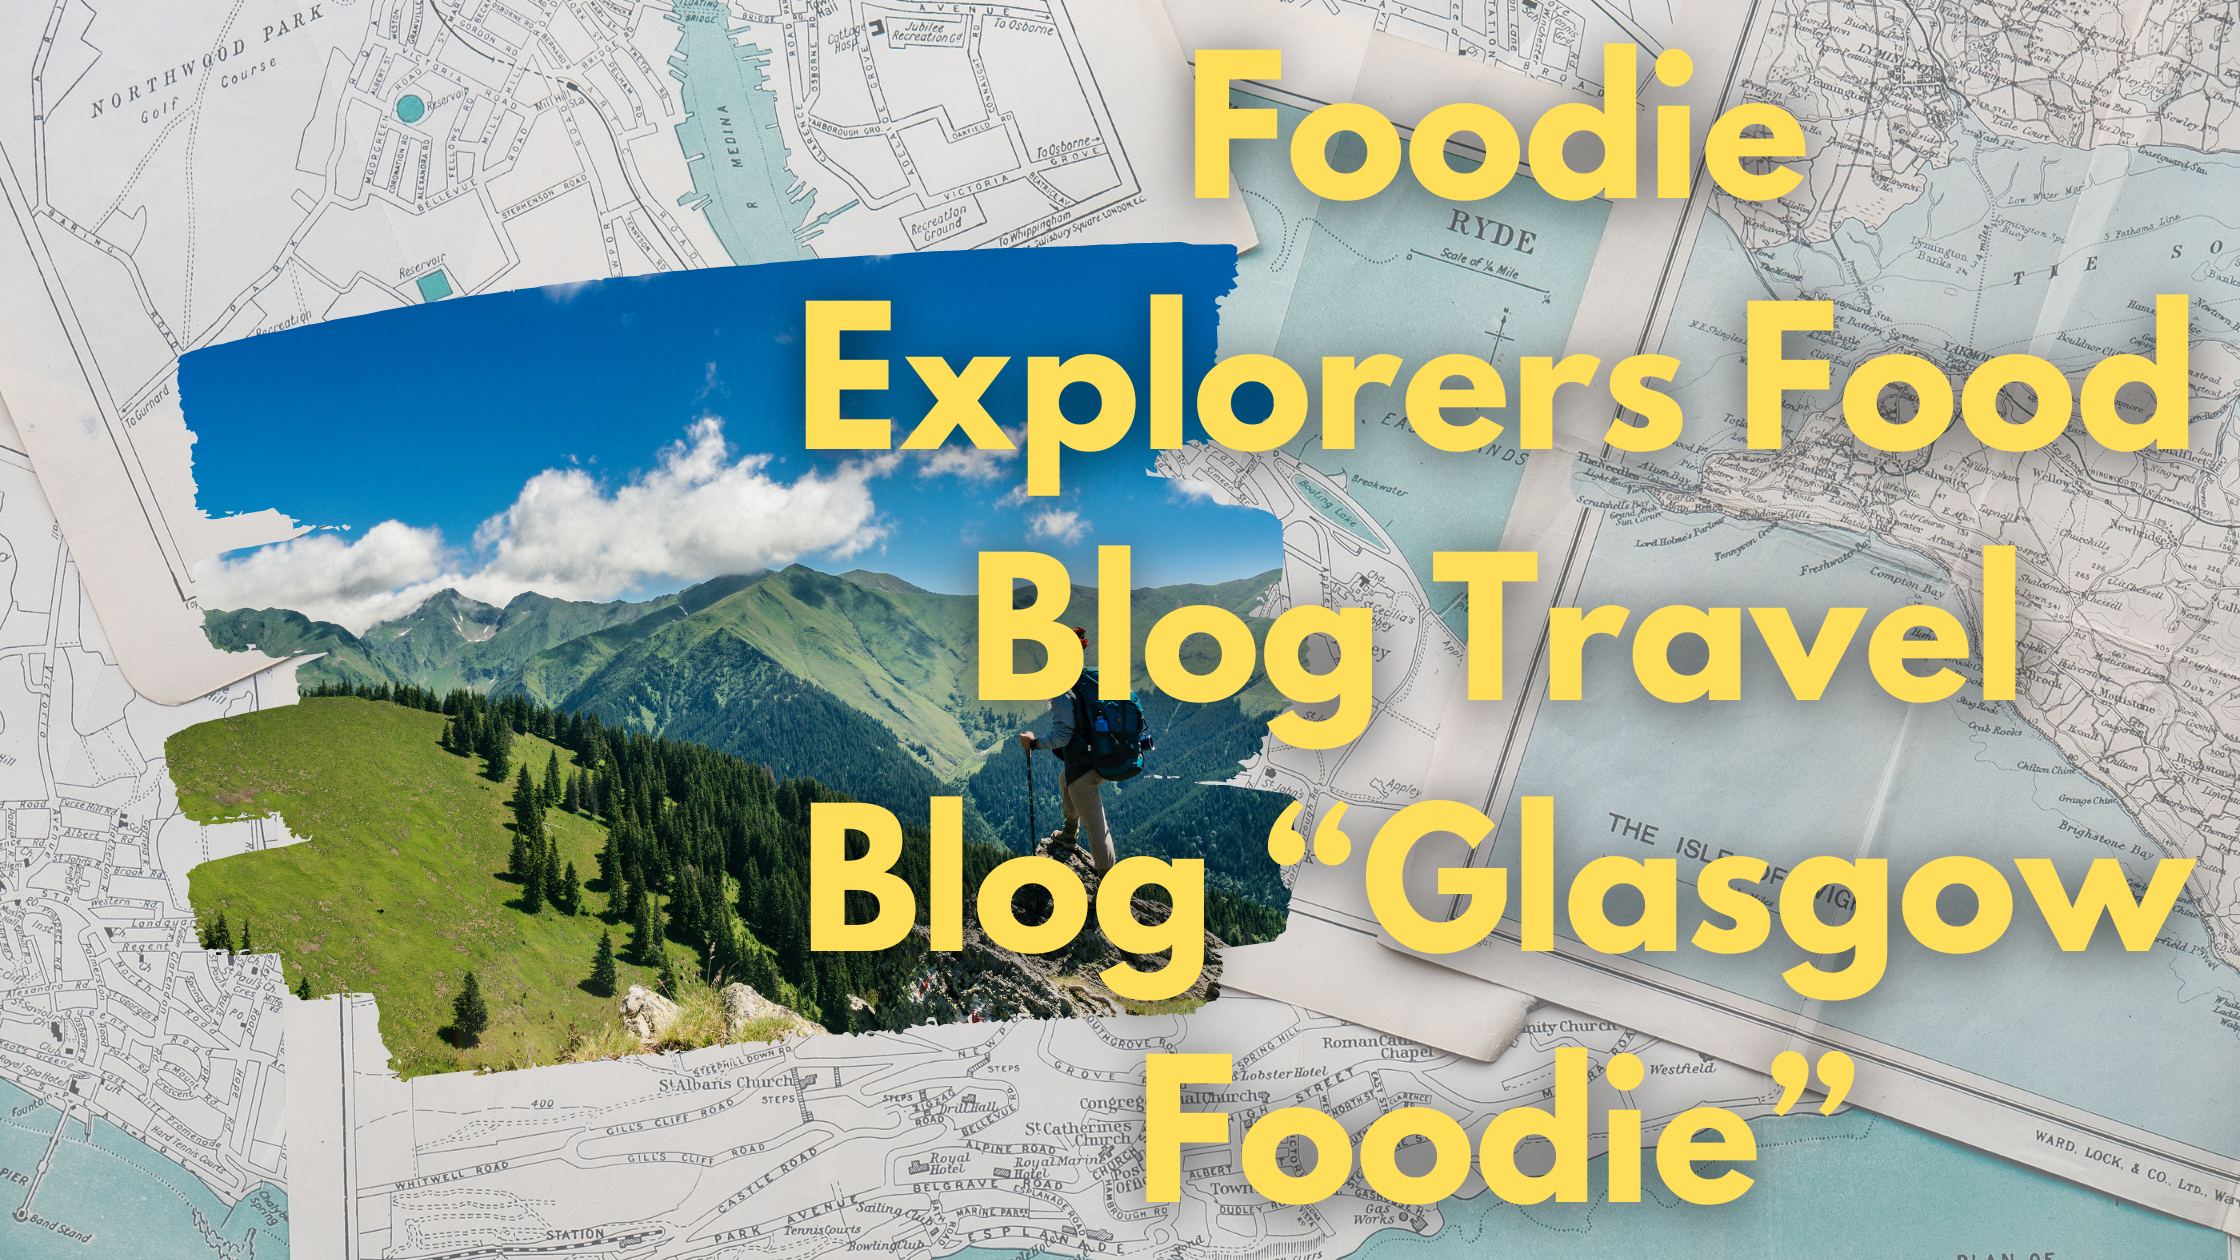 Foodie Explorers Food Blog Travel Blog “Glasgow Foodie”